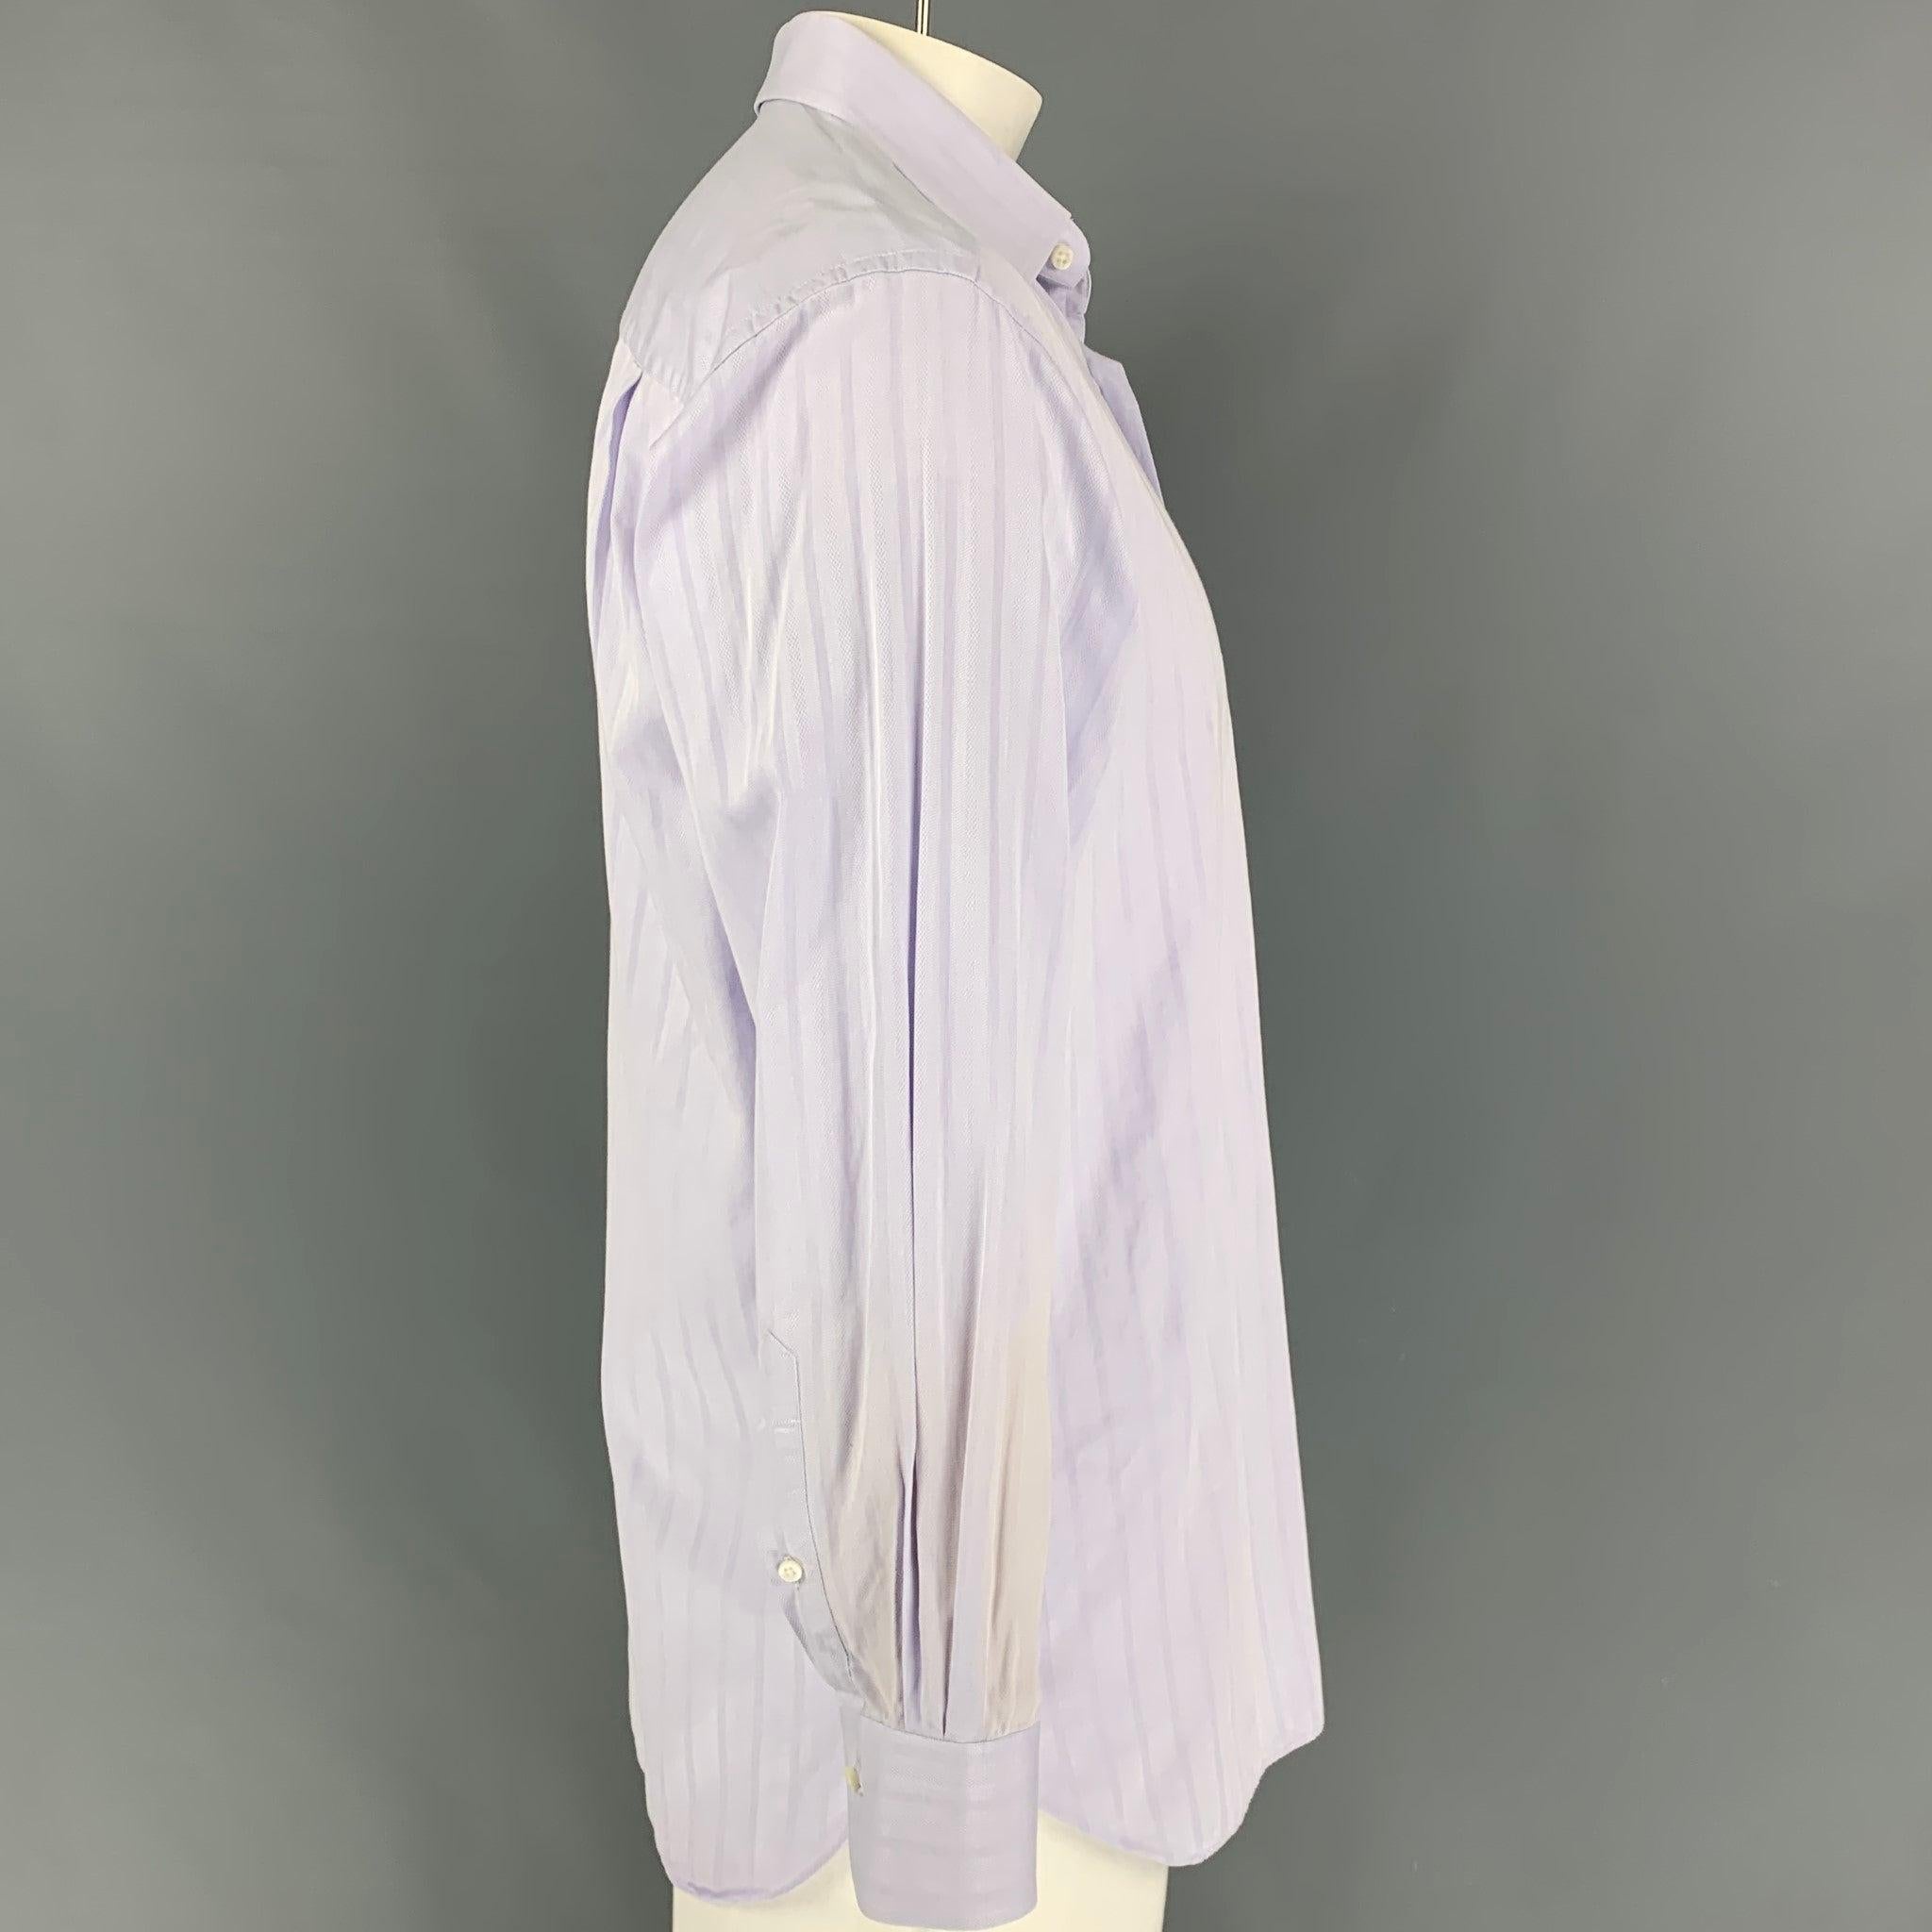 La chemise à manches longues ERMENEGILDO Zegna se présente dans un coton violet avec un col rond, une poche frontale et une fermeture à bouton.
Très bien
Etat d'occasion. 

Marqué :   41/16 

Mesures : 
 
Épaule : 19 pouces  Poitrine : 44 pouces 